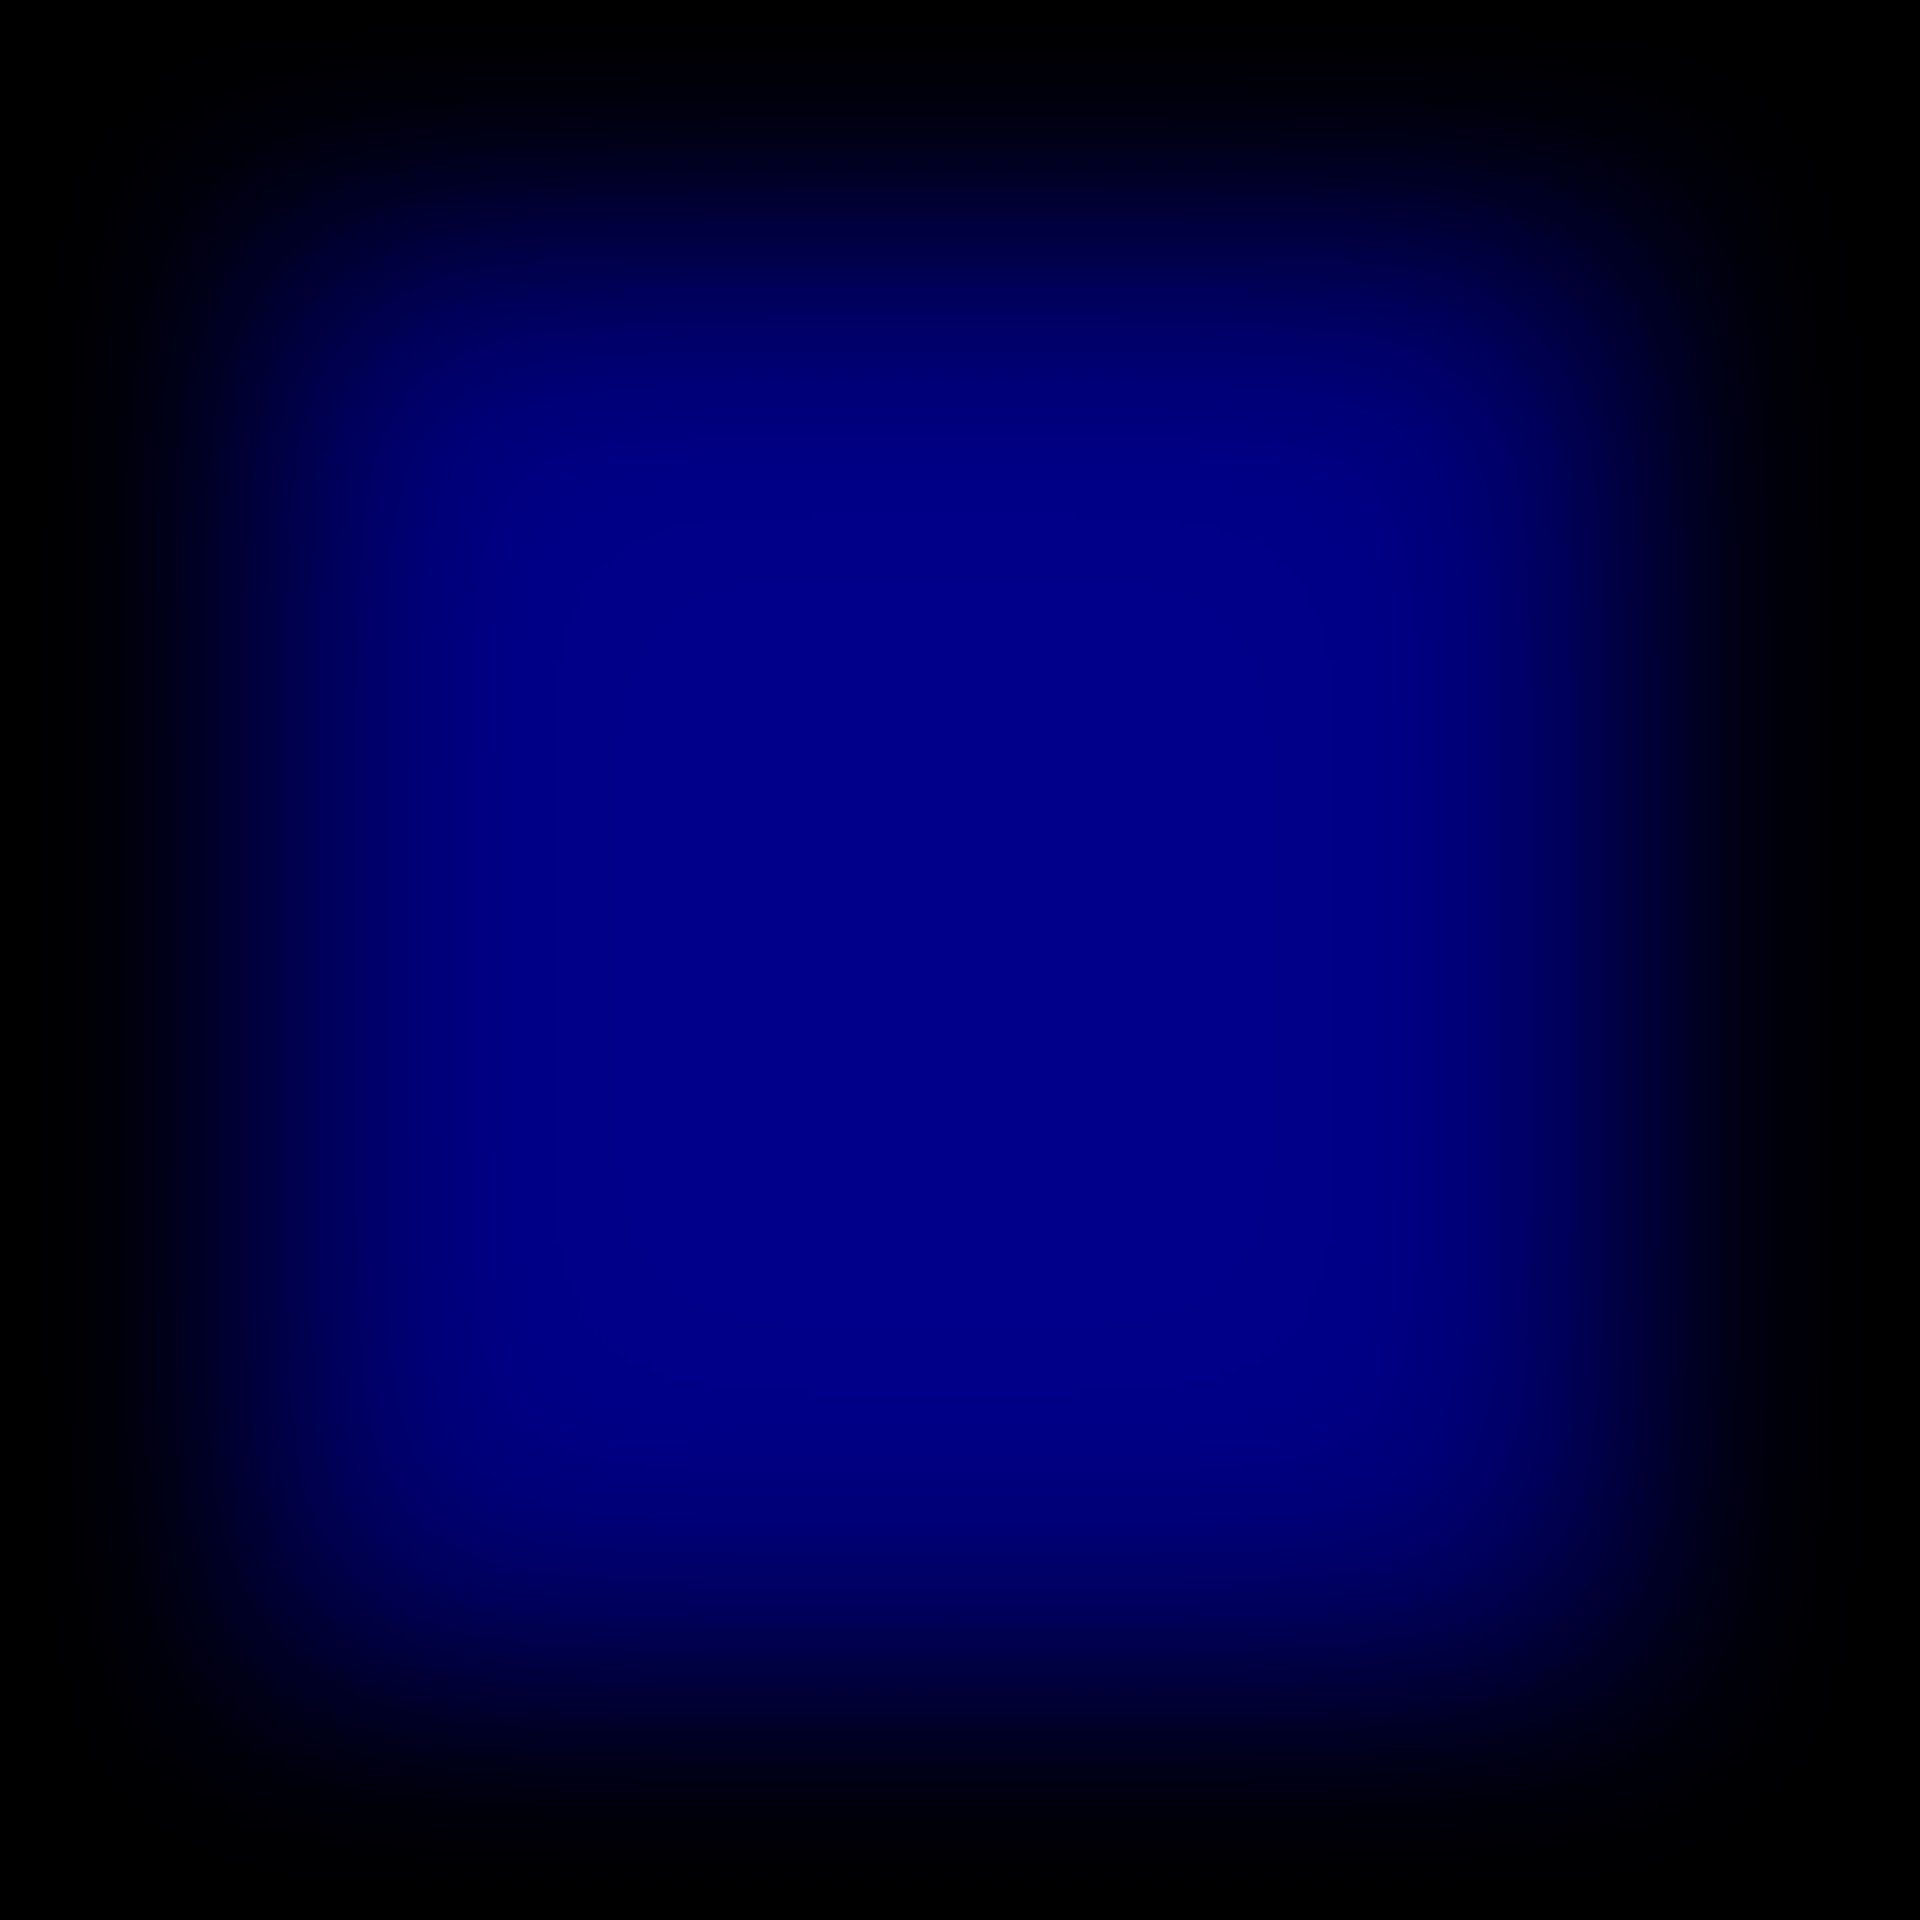 Dark Blue Gradient Frame